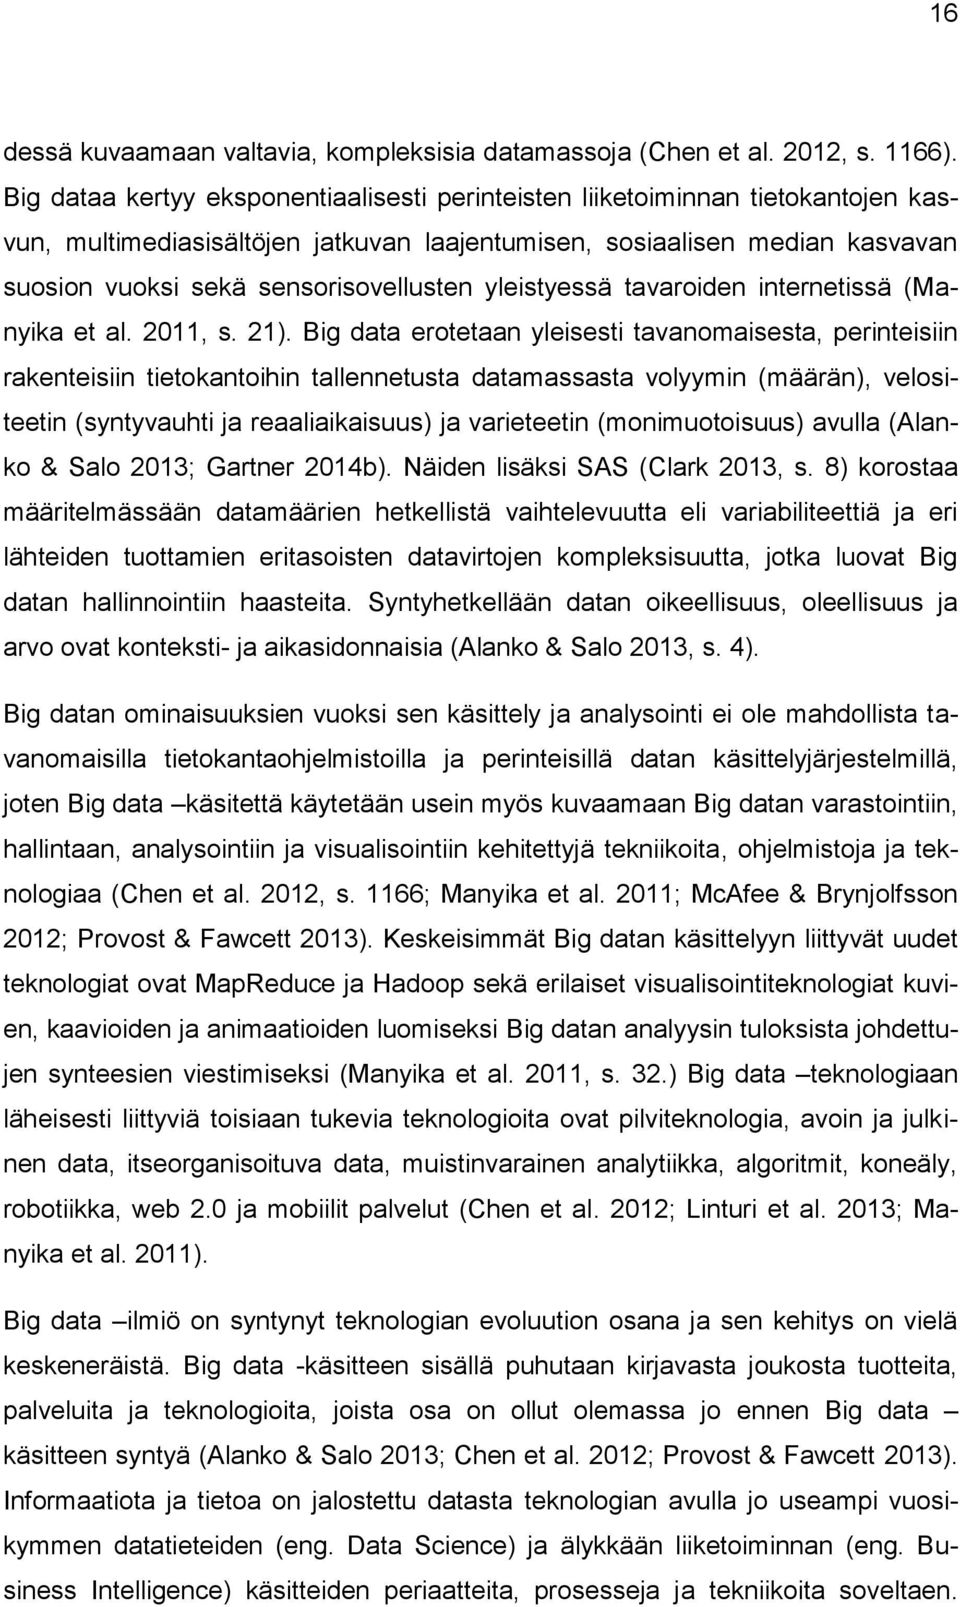 yleistyessä tavaroiden internetissä (Manyika et al. 2011, s. 21).